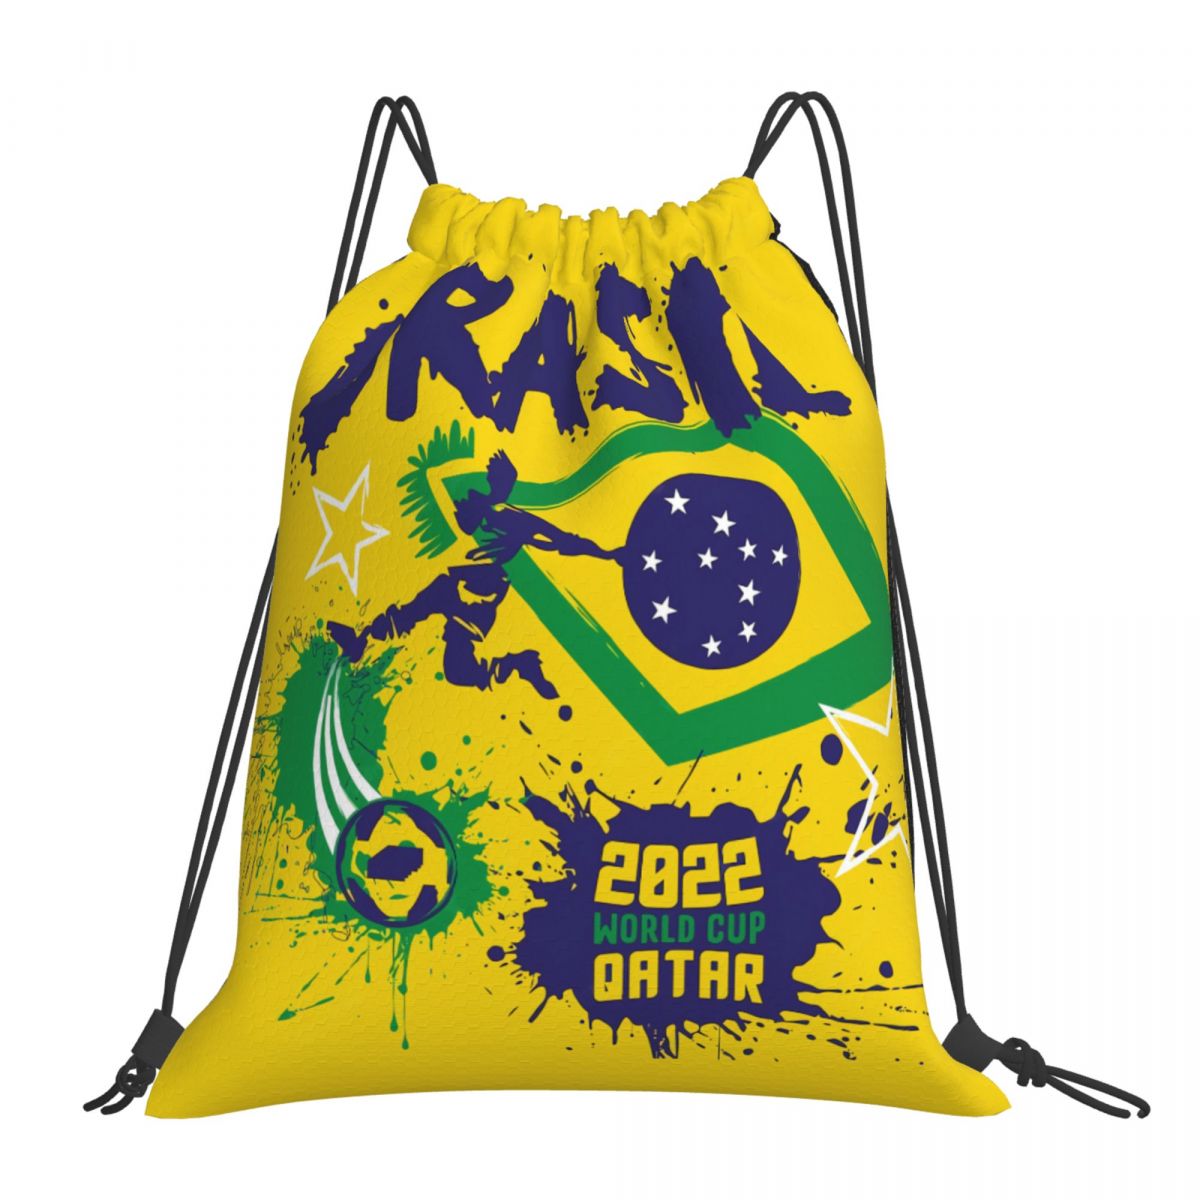 Brazil 2022 Qatar World Cup Drawstring Bags for School Gym